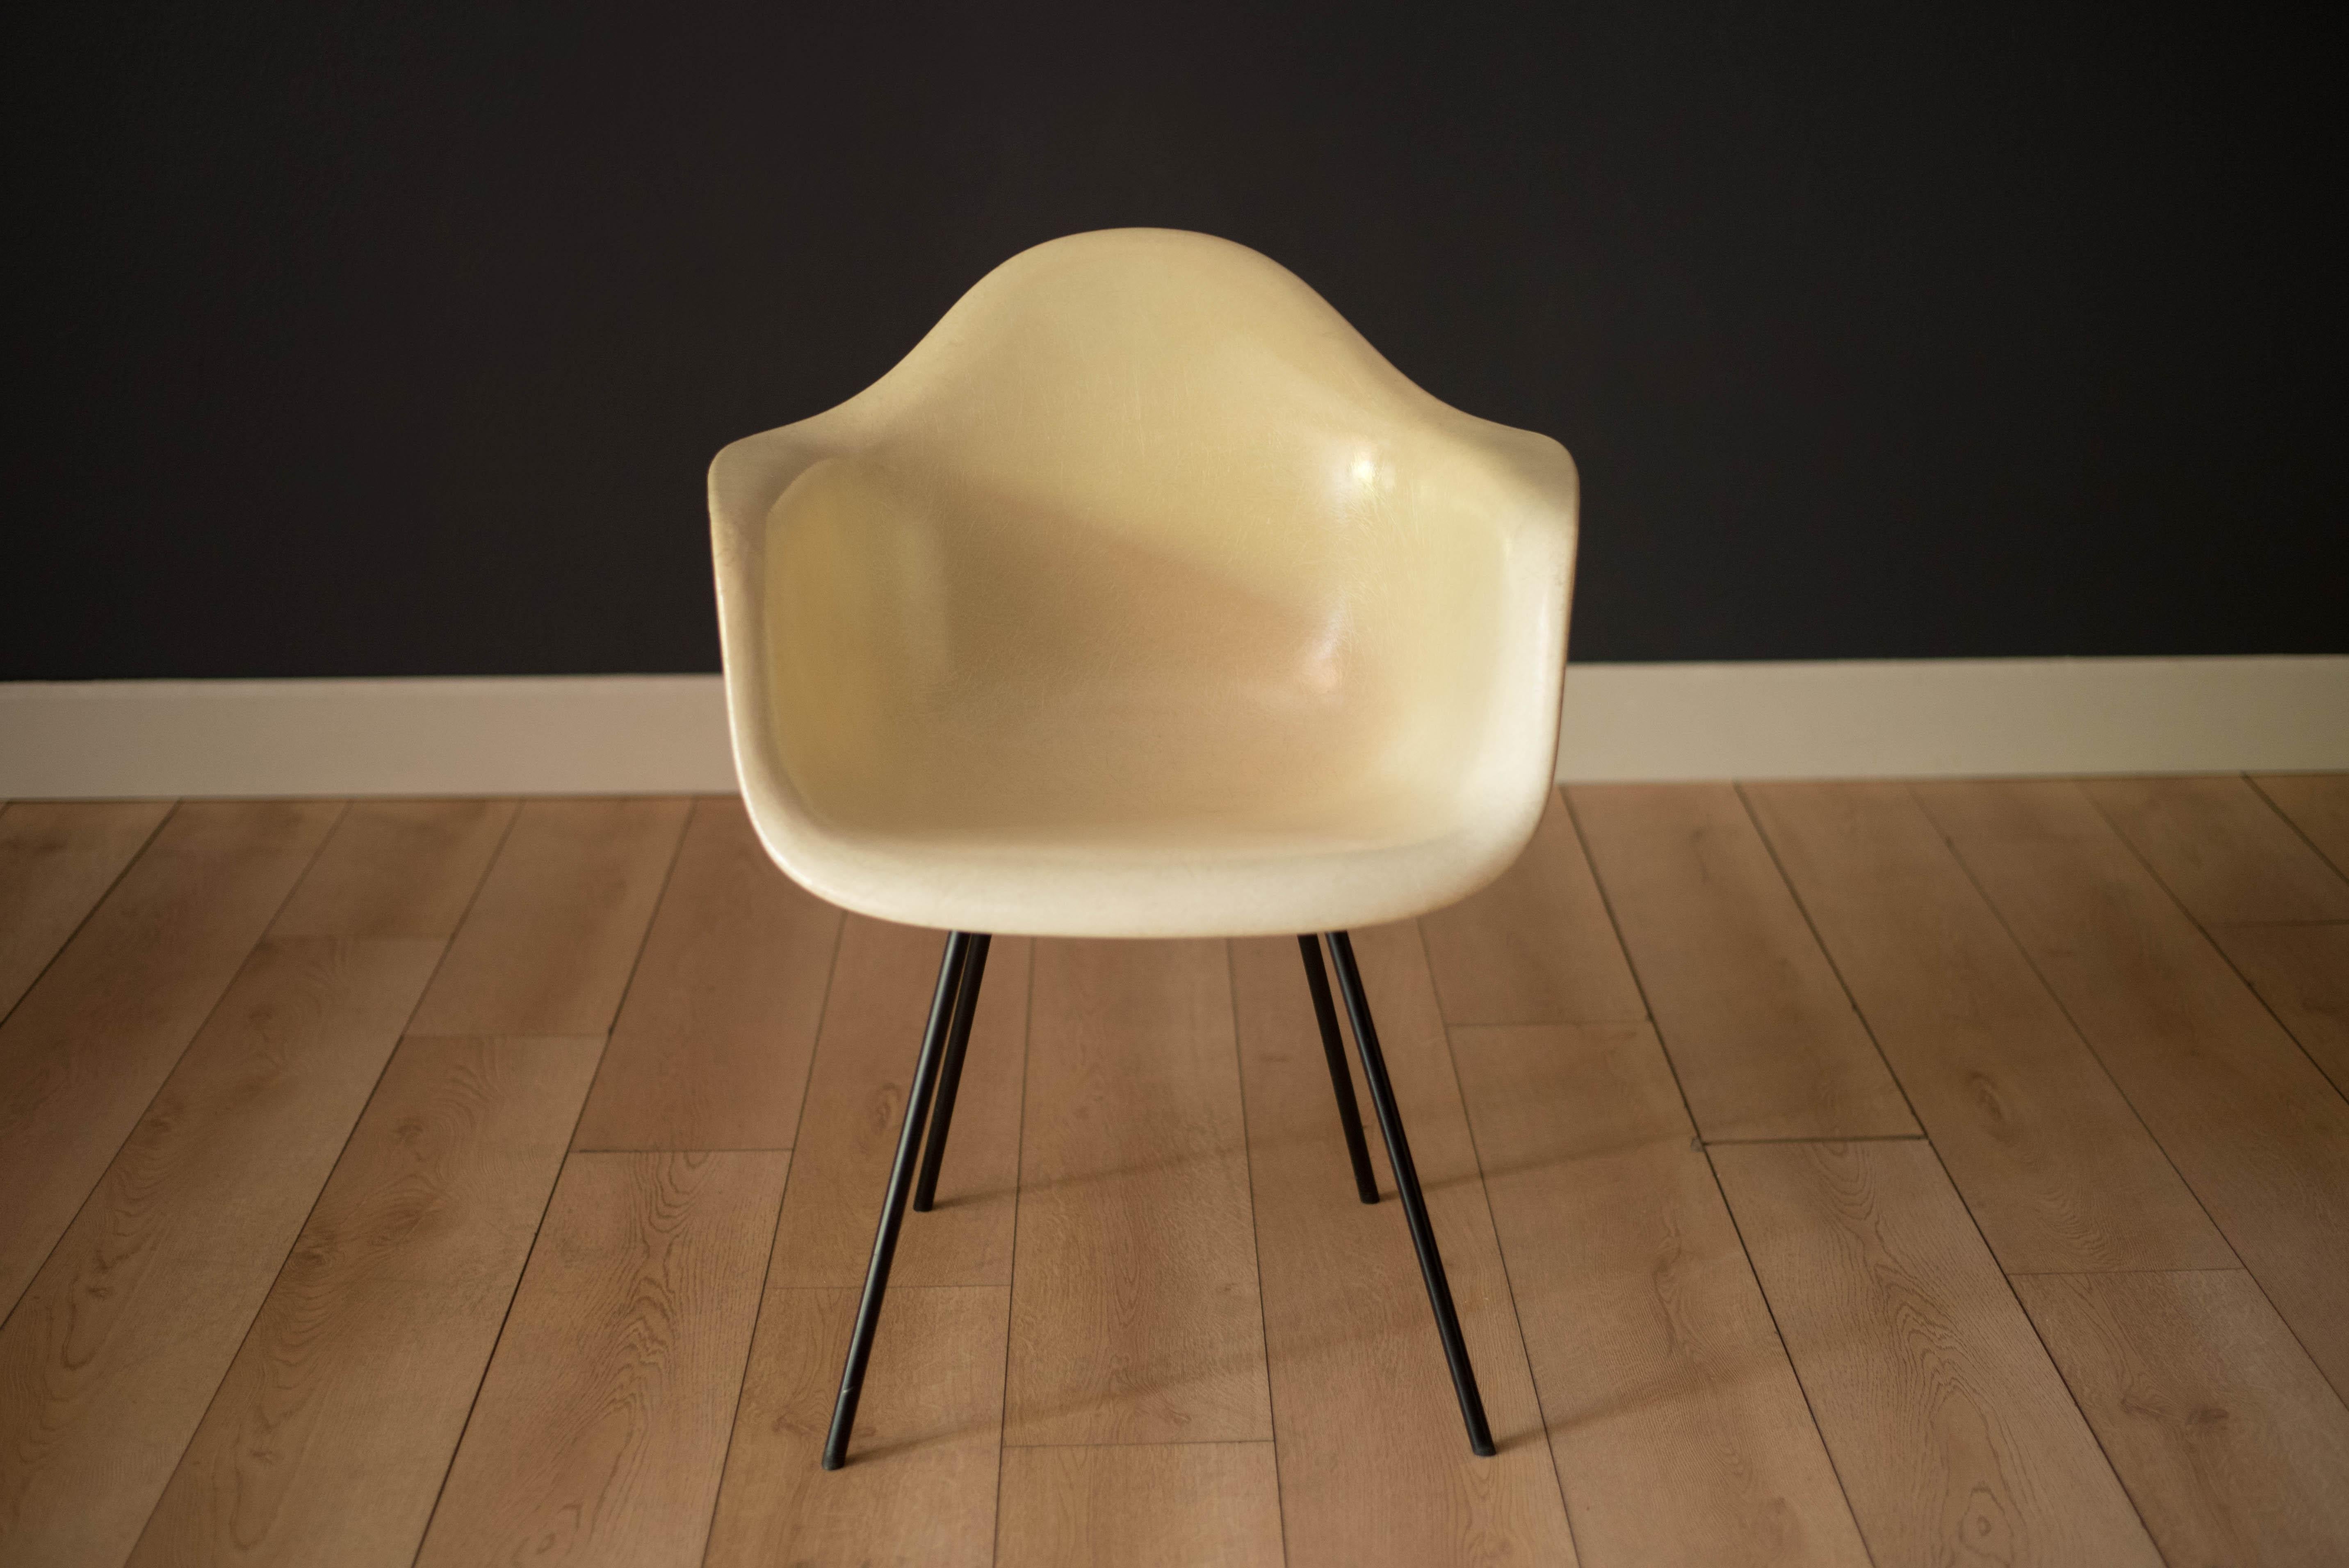 Fauteuil de salle à manger Icone design (DAX) x-base de Ray et Charles Eames, vers le début des années 1950. Ce fauteuil de deuxième génération de couleur parchemin conserve une finition brillante soutenue par la base d'origine en acier X noir avec